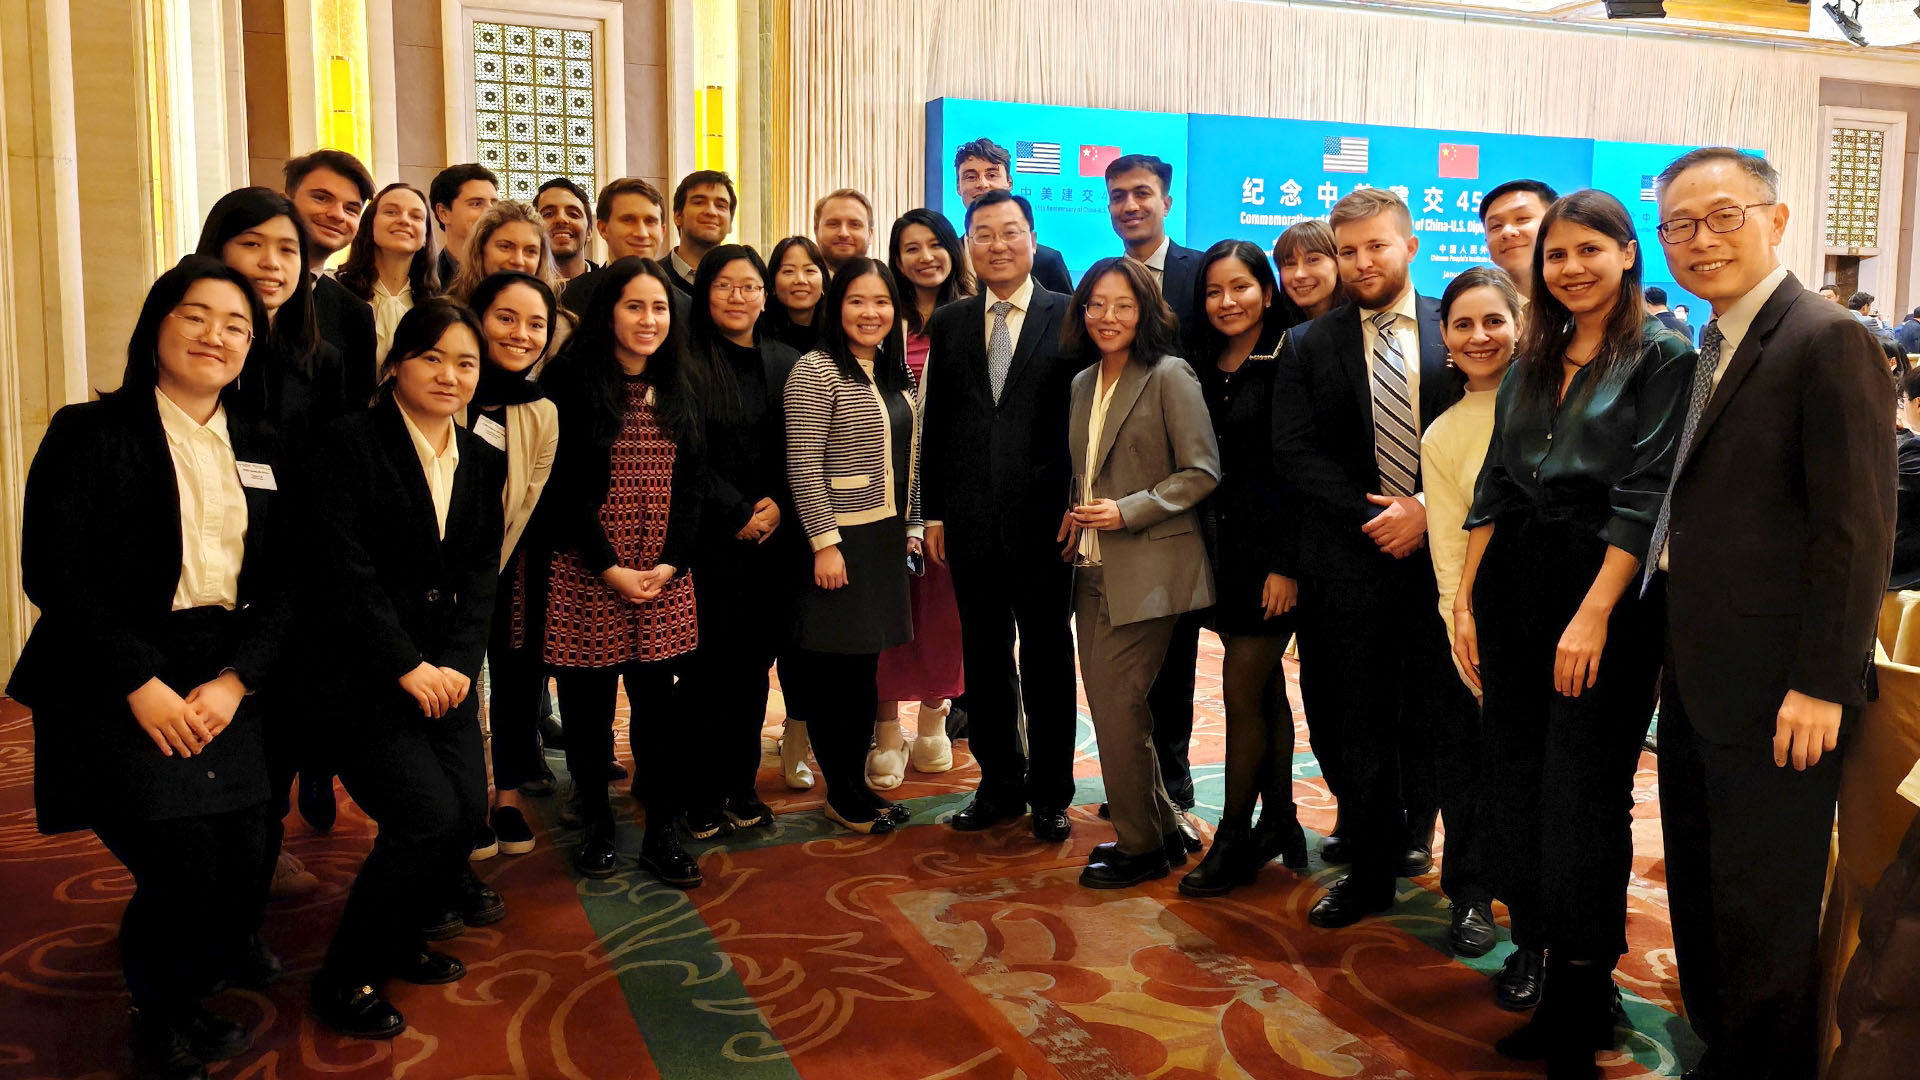 哥大学生代表团在北京出席中美建交45周年招待会